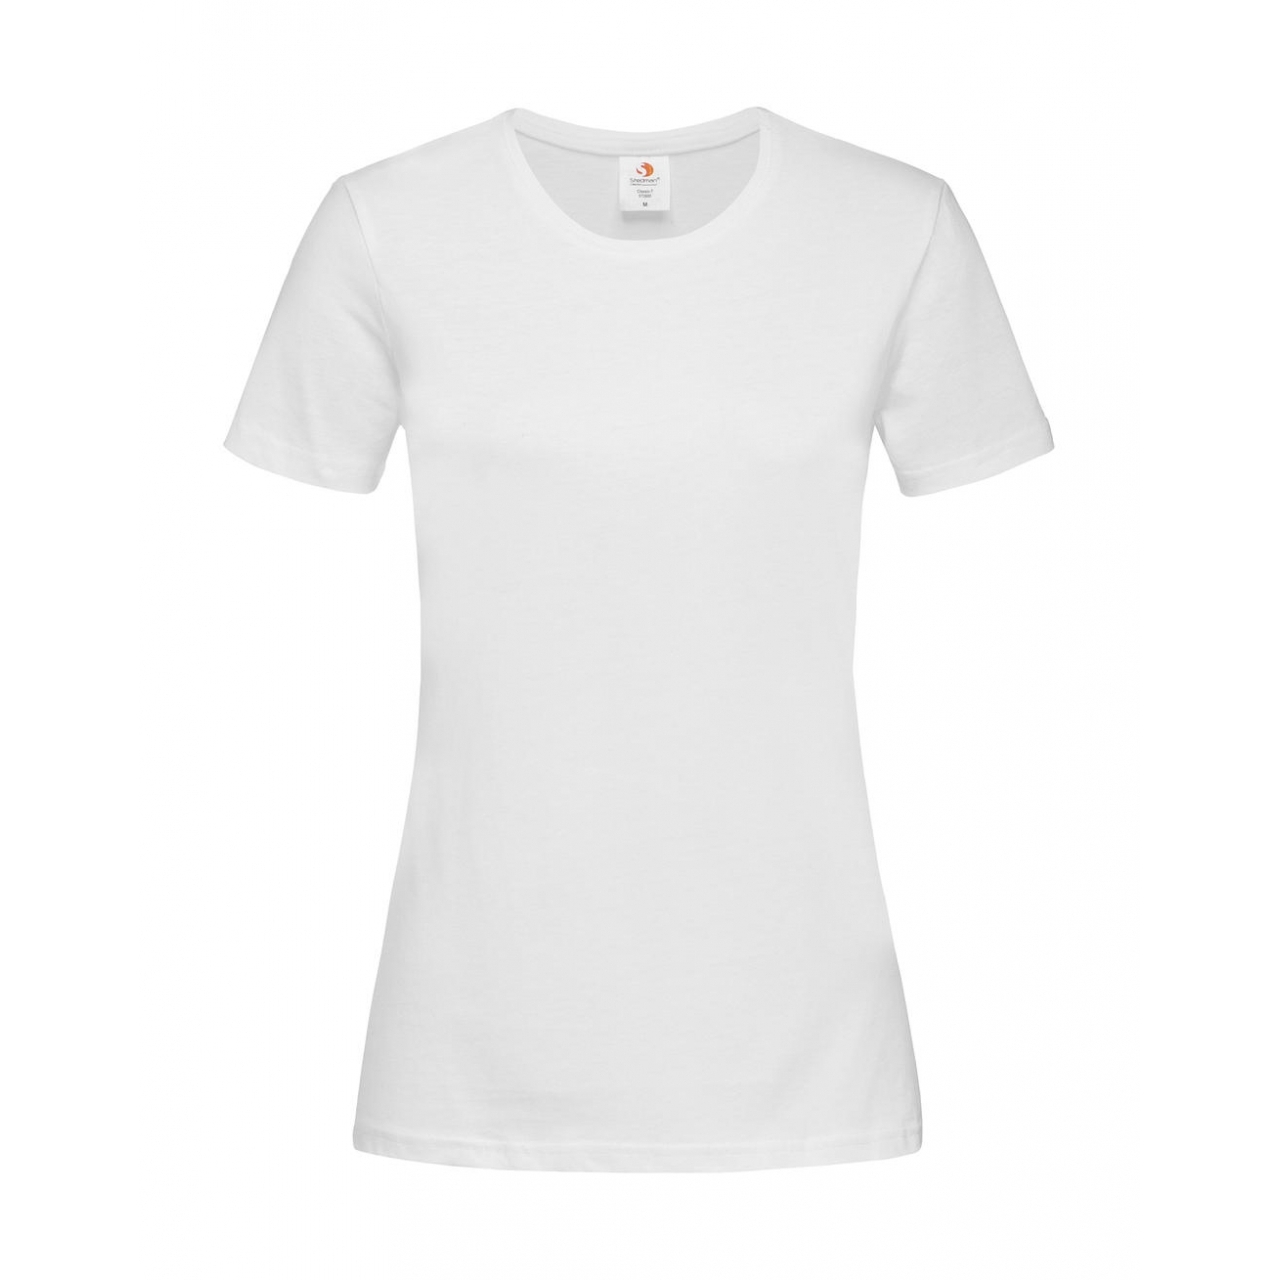 Tričko dámské Stedman Fitted s kulatým výstřihem - bílé, XS